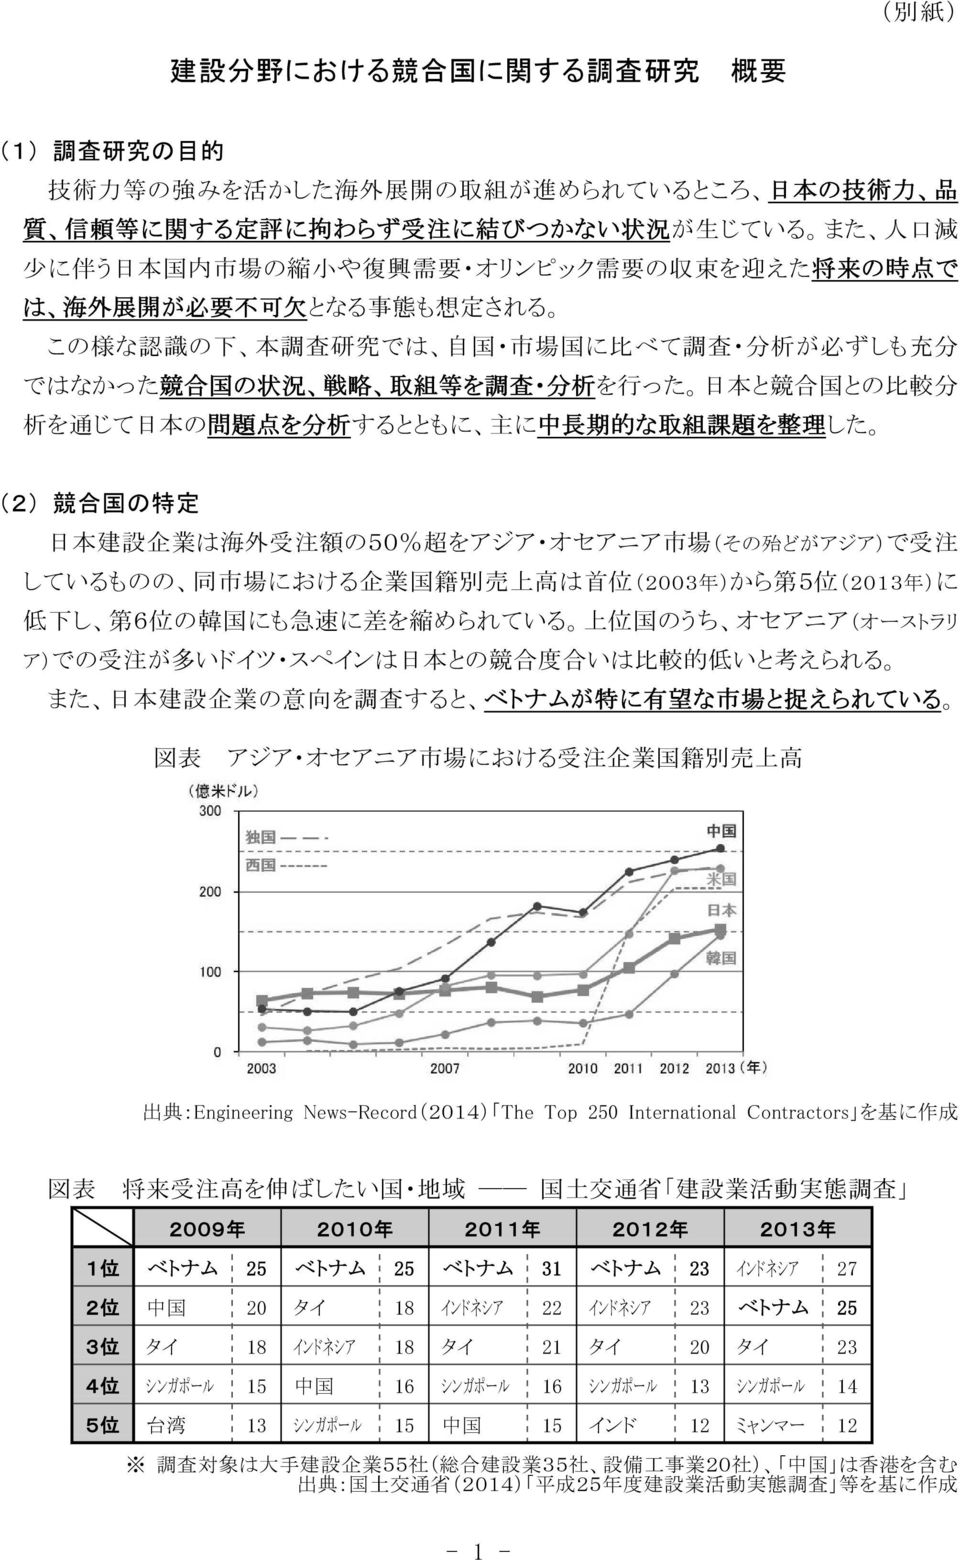 行 った 日 本 と 競 合 国 との 比 較 分 析 を 通 じて 日 本 の 問 題 点 を 分 析 するとともに 主 に 中 長 期 的 な 取 組 課 題 を 整 理 した (2) 競 合 国 の 特 定 日 本 建 設 企 業 は 海 外 受 注 額 の50% 超 をアジア オセアニア 市 場 (その 殆 どがアジア)で 受 注 しているものの 同 市 場 における 企 業 国 籍 別